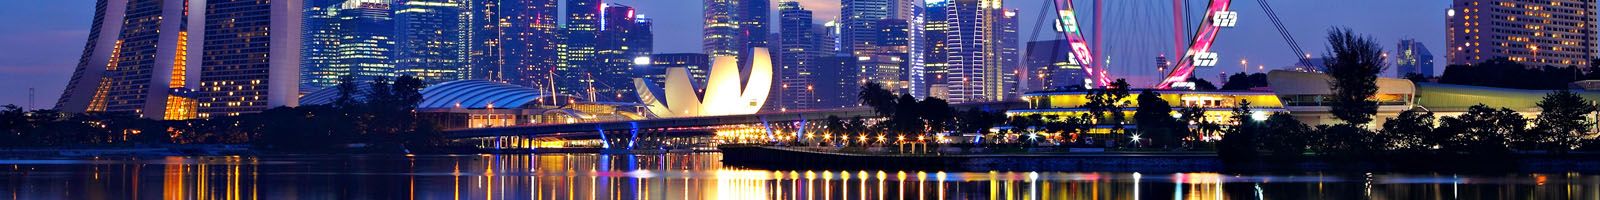 Tour Du lịch Singapore Giá Rẻ nhất: Ngày thường, Tour Lễ Tết